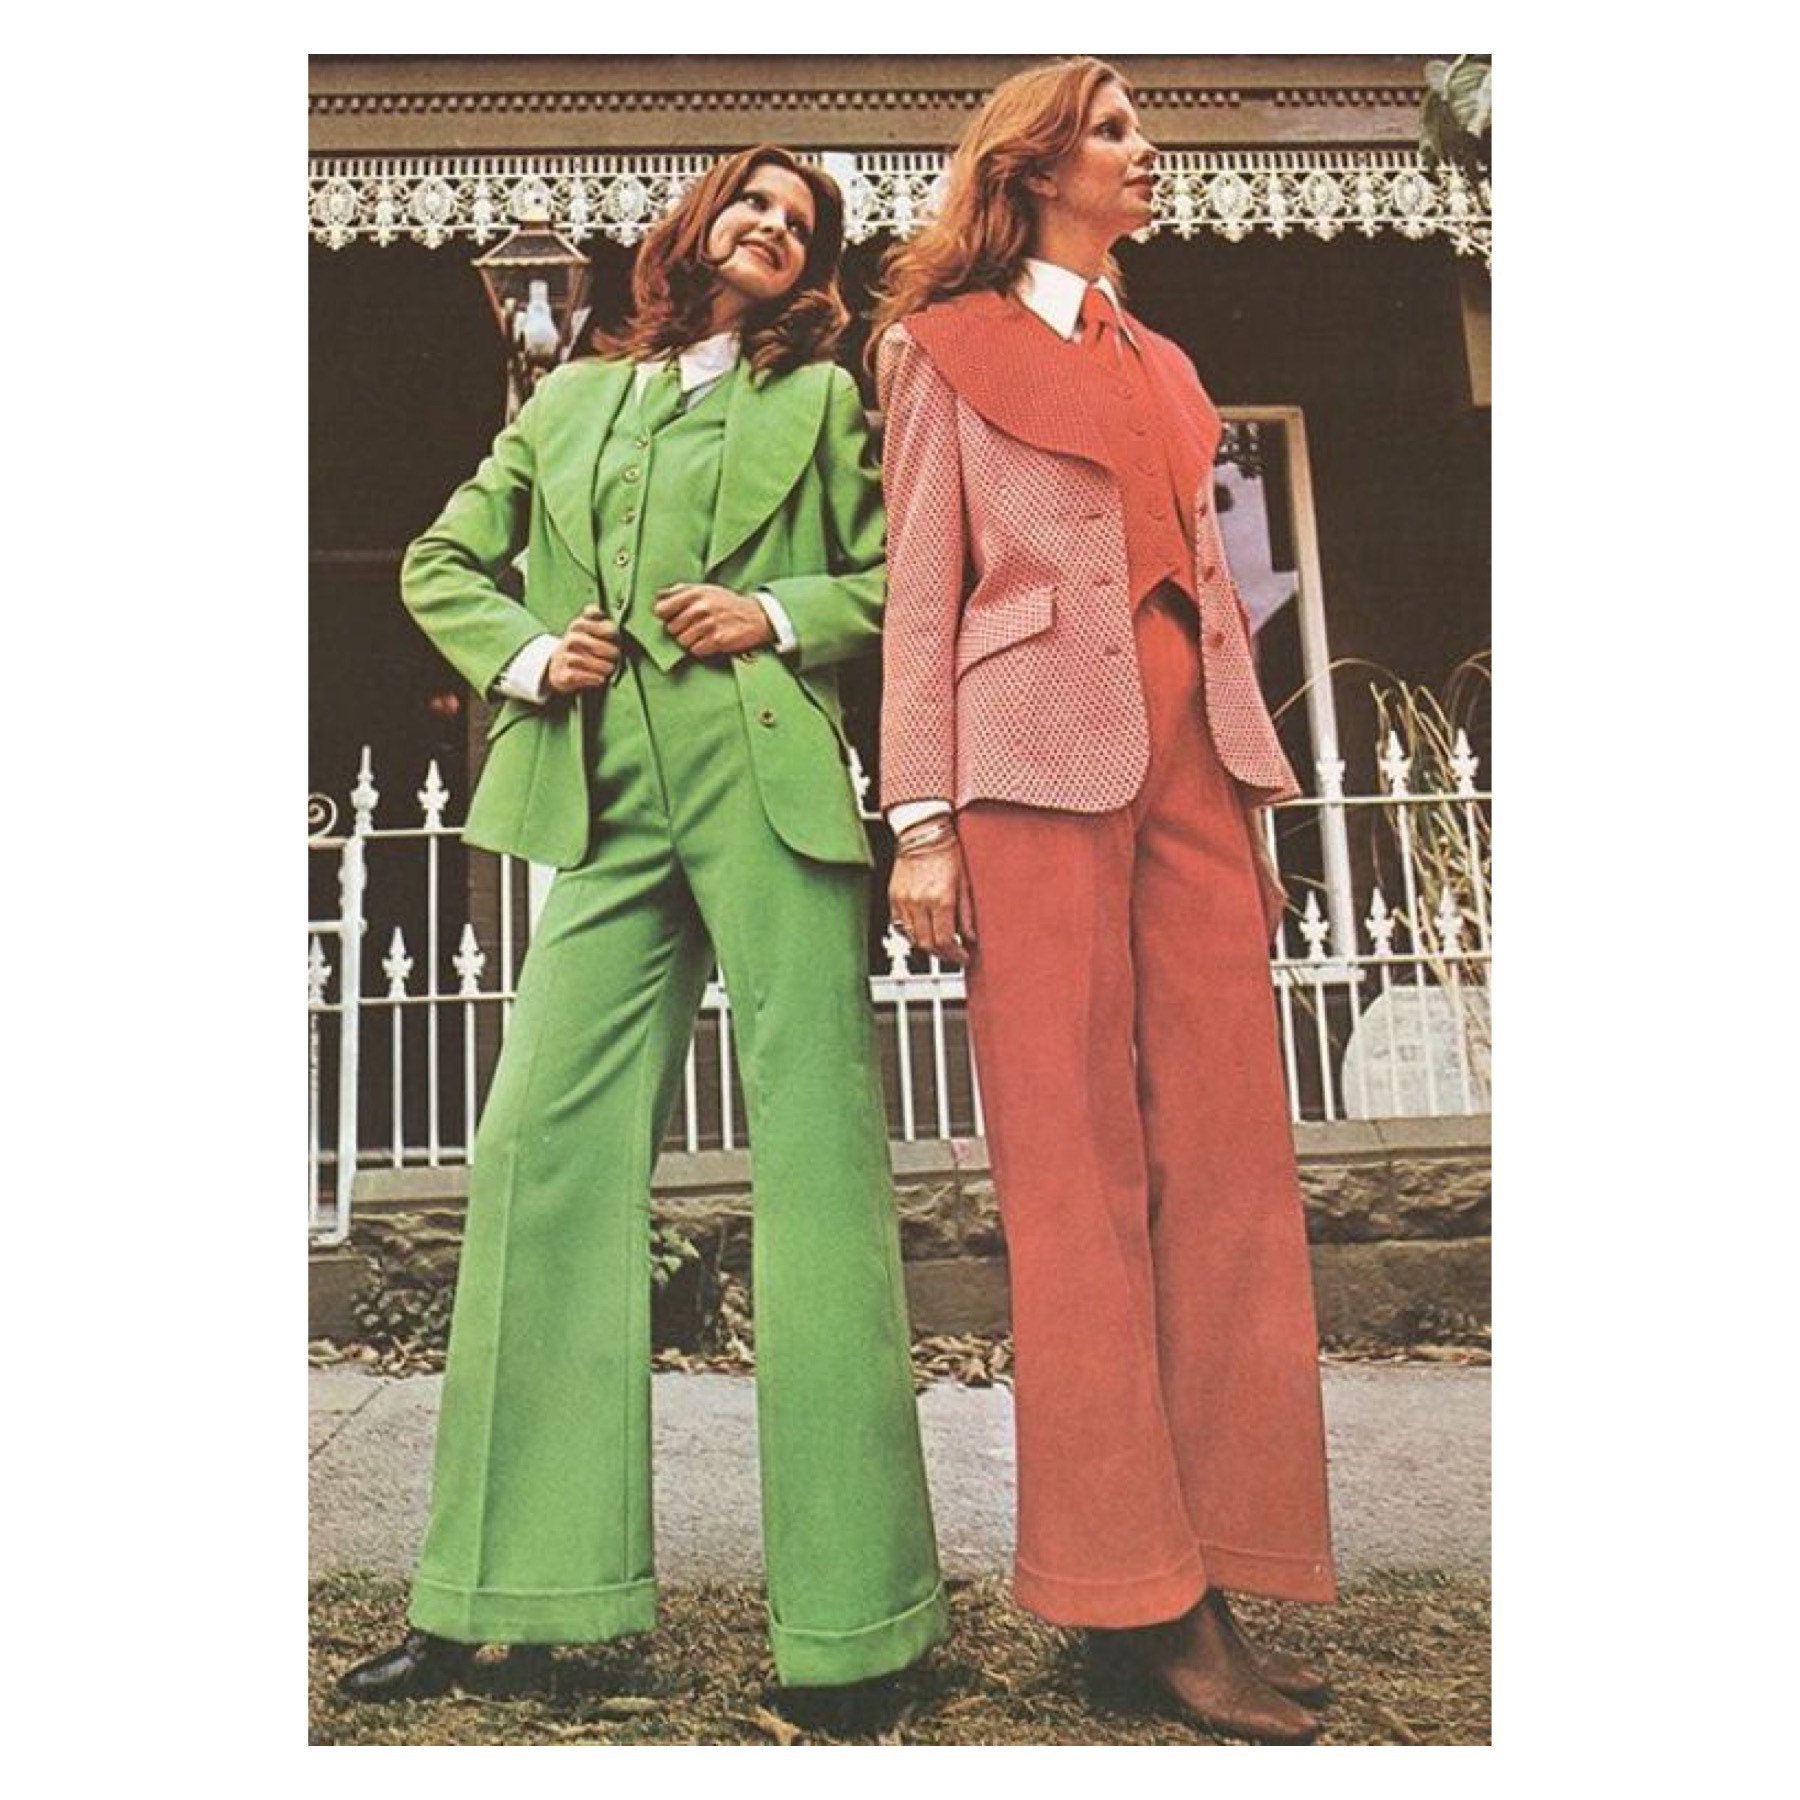 Men's Leisure Suit & Women's Pantsuit - Spiegel, 1976 : r